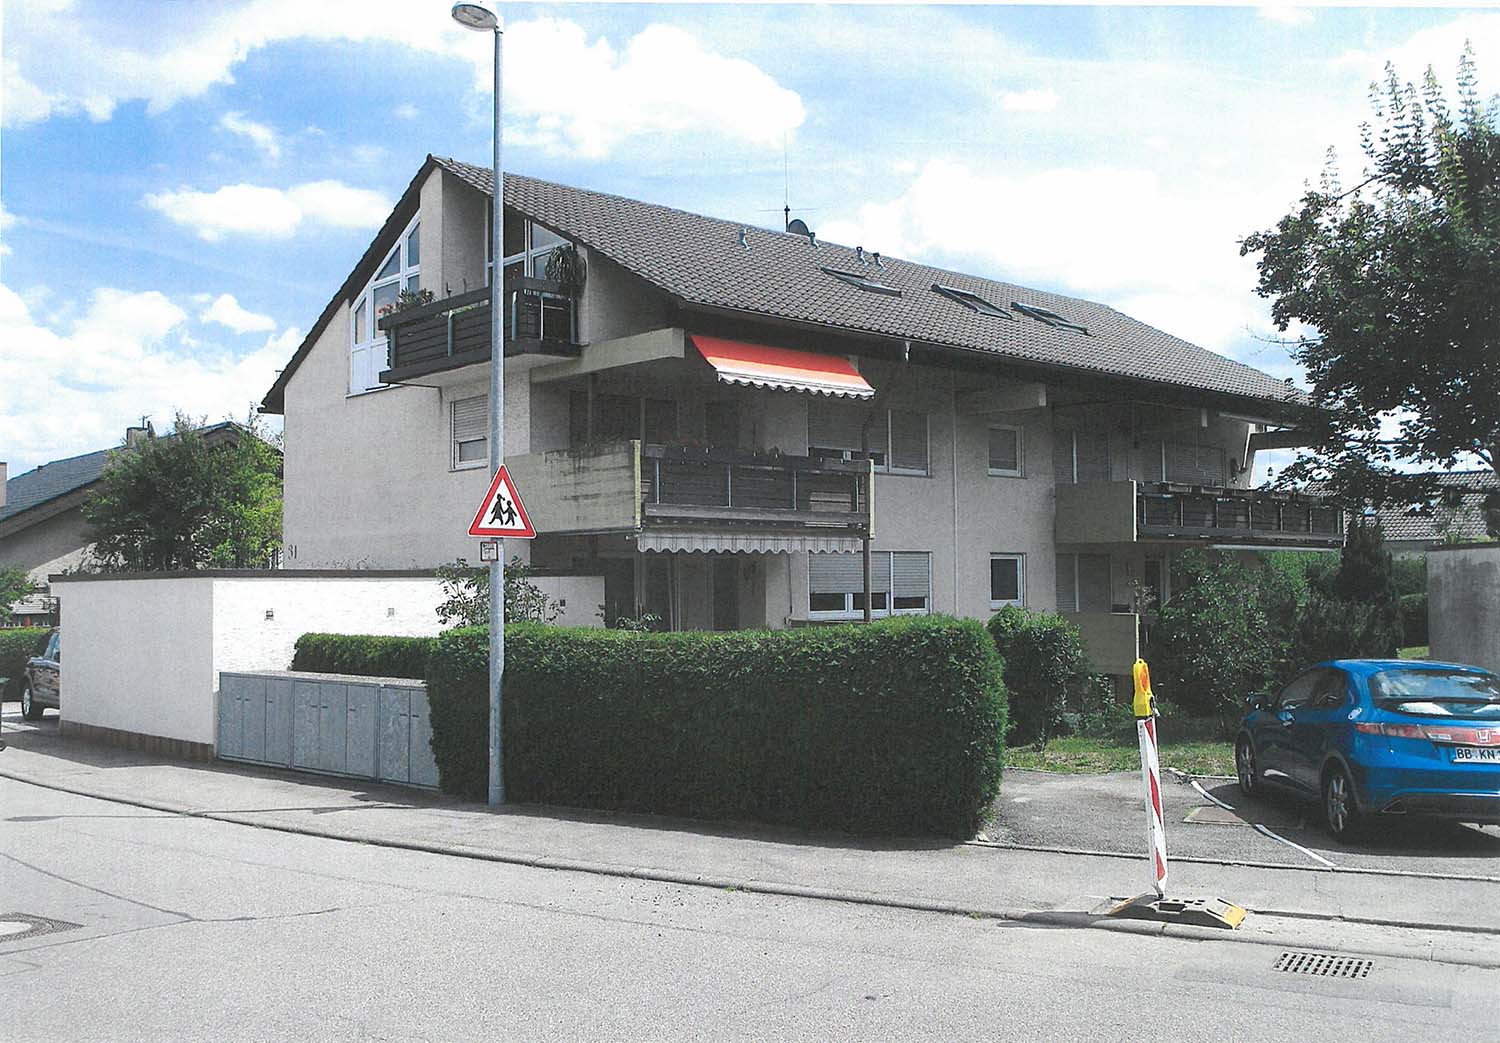 Vorher-Nachher Architekturvisualisierung mit Integration in die Bestandsbilder einer Fassadensanierung eines Mehrfamilienhauses, Königsbergerstraße, Ehningen für Architektur + Planen S C H E D L  GmbH (Jahr 2017). Hier die Nachher-Variante.